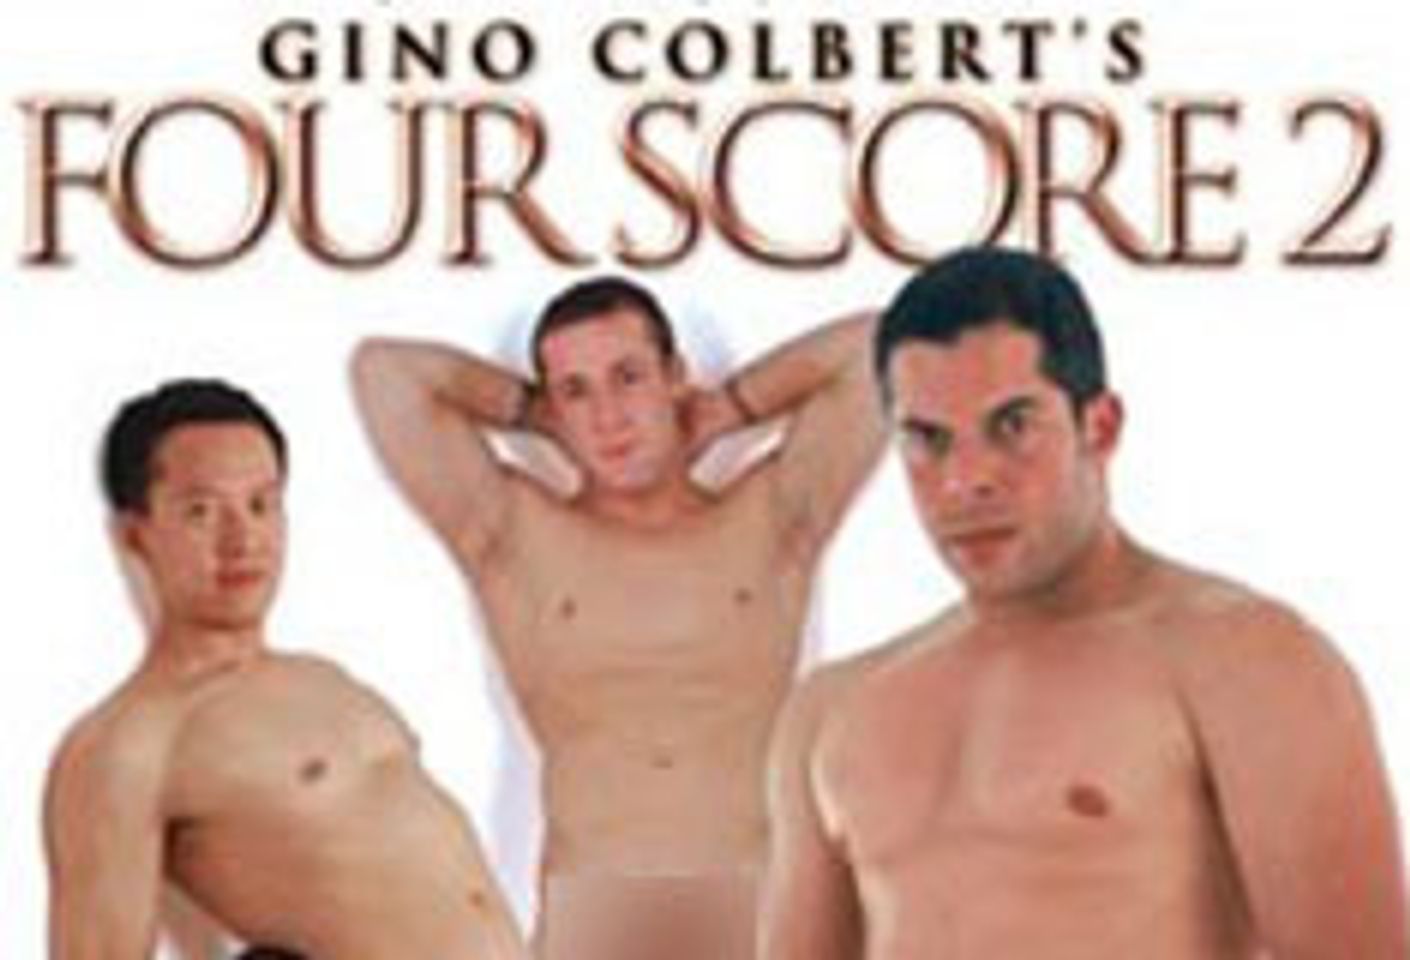 Colbert Announces <i>Four Score 2</i> Release Parties, Premiere